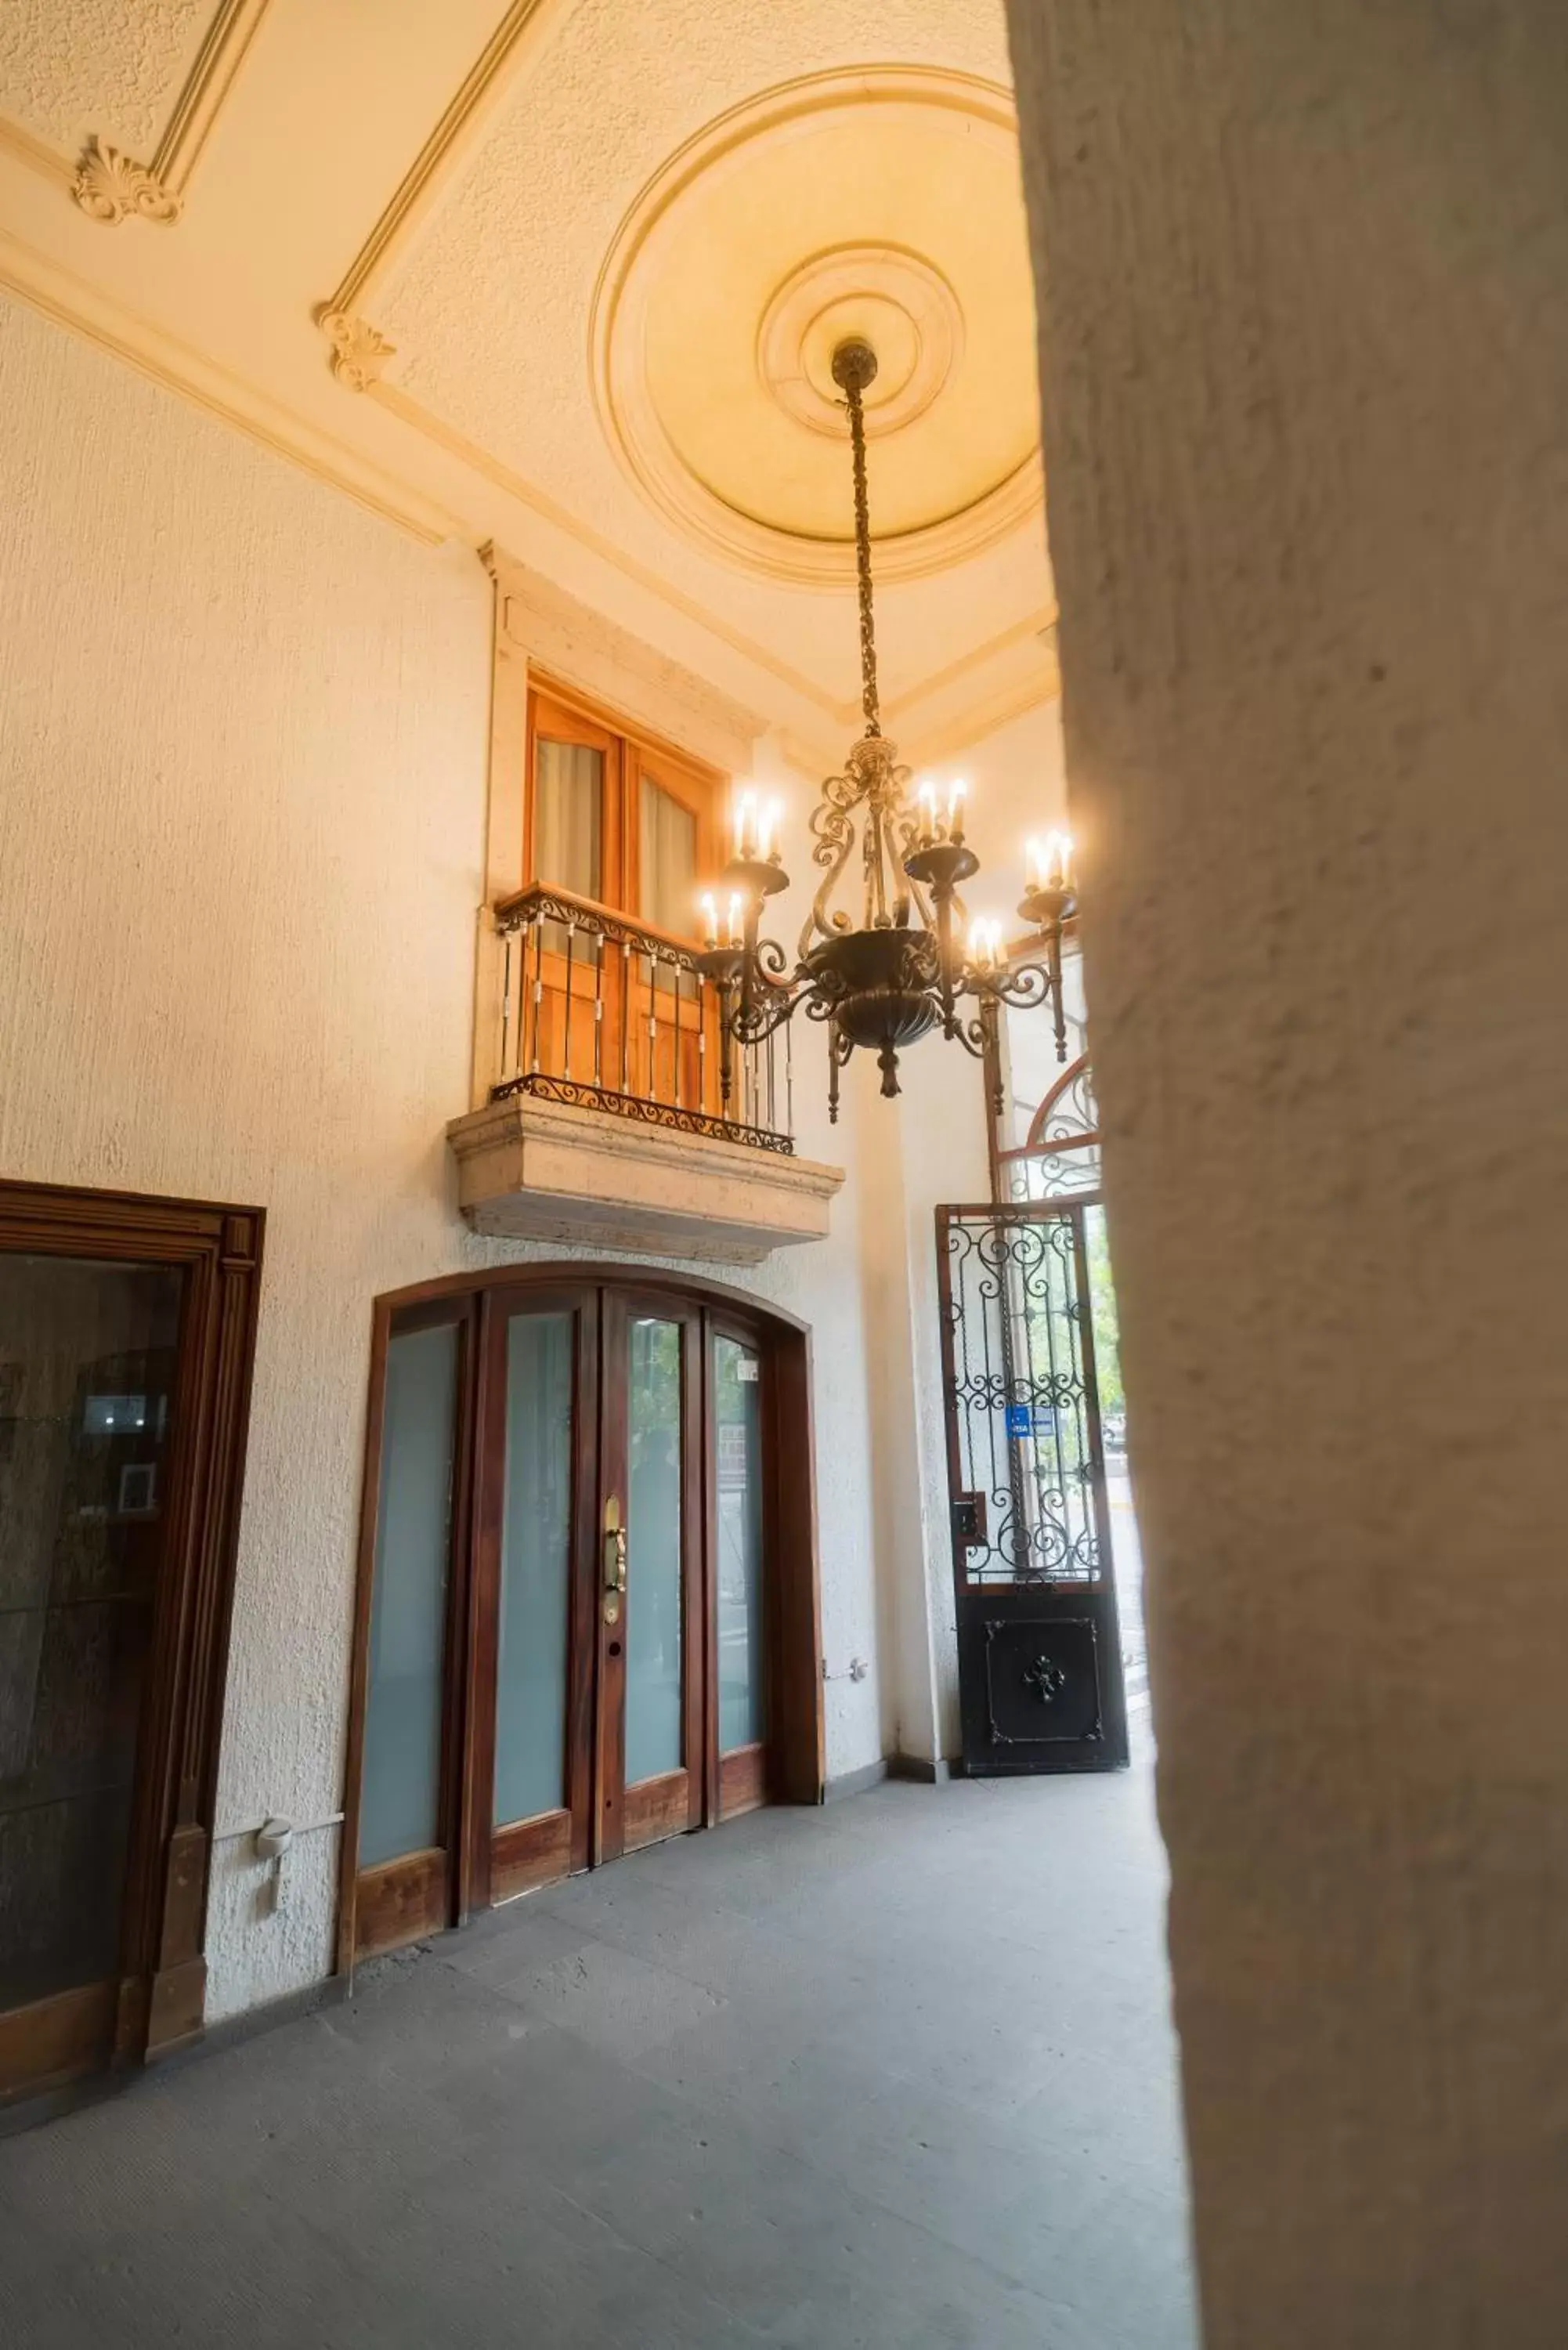 Property building in Hotel Santiago De Compostela - Guadalajara Centro Historico